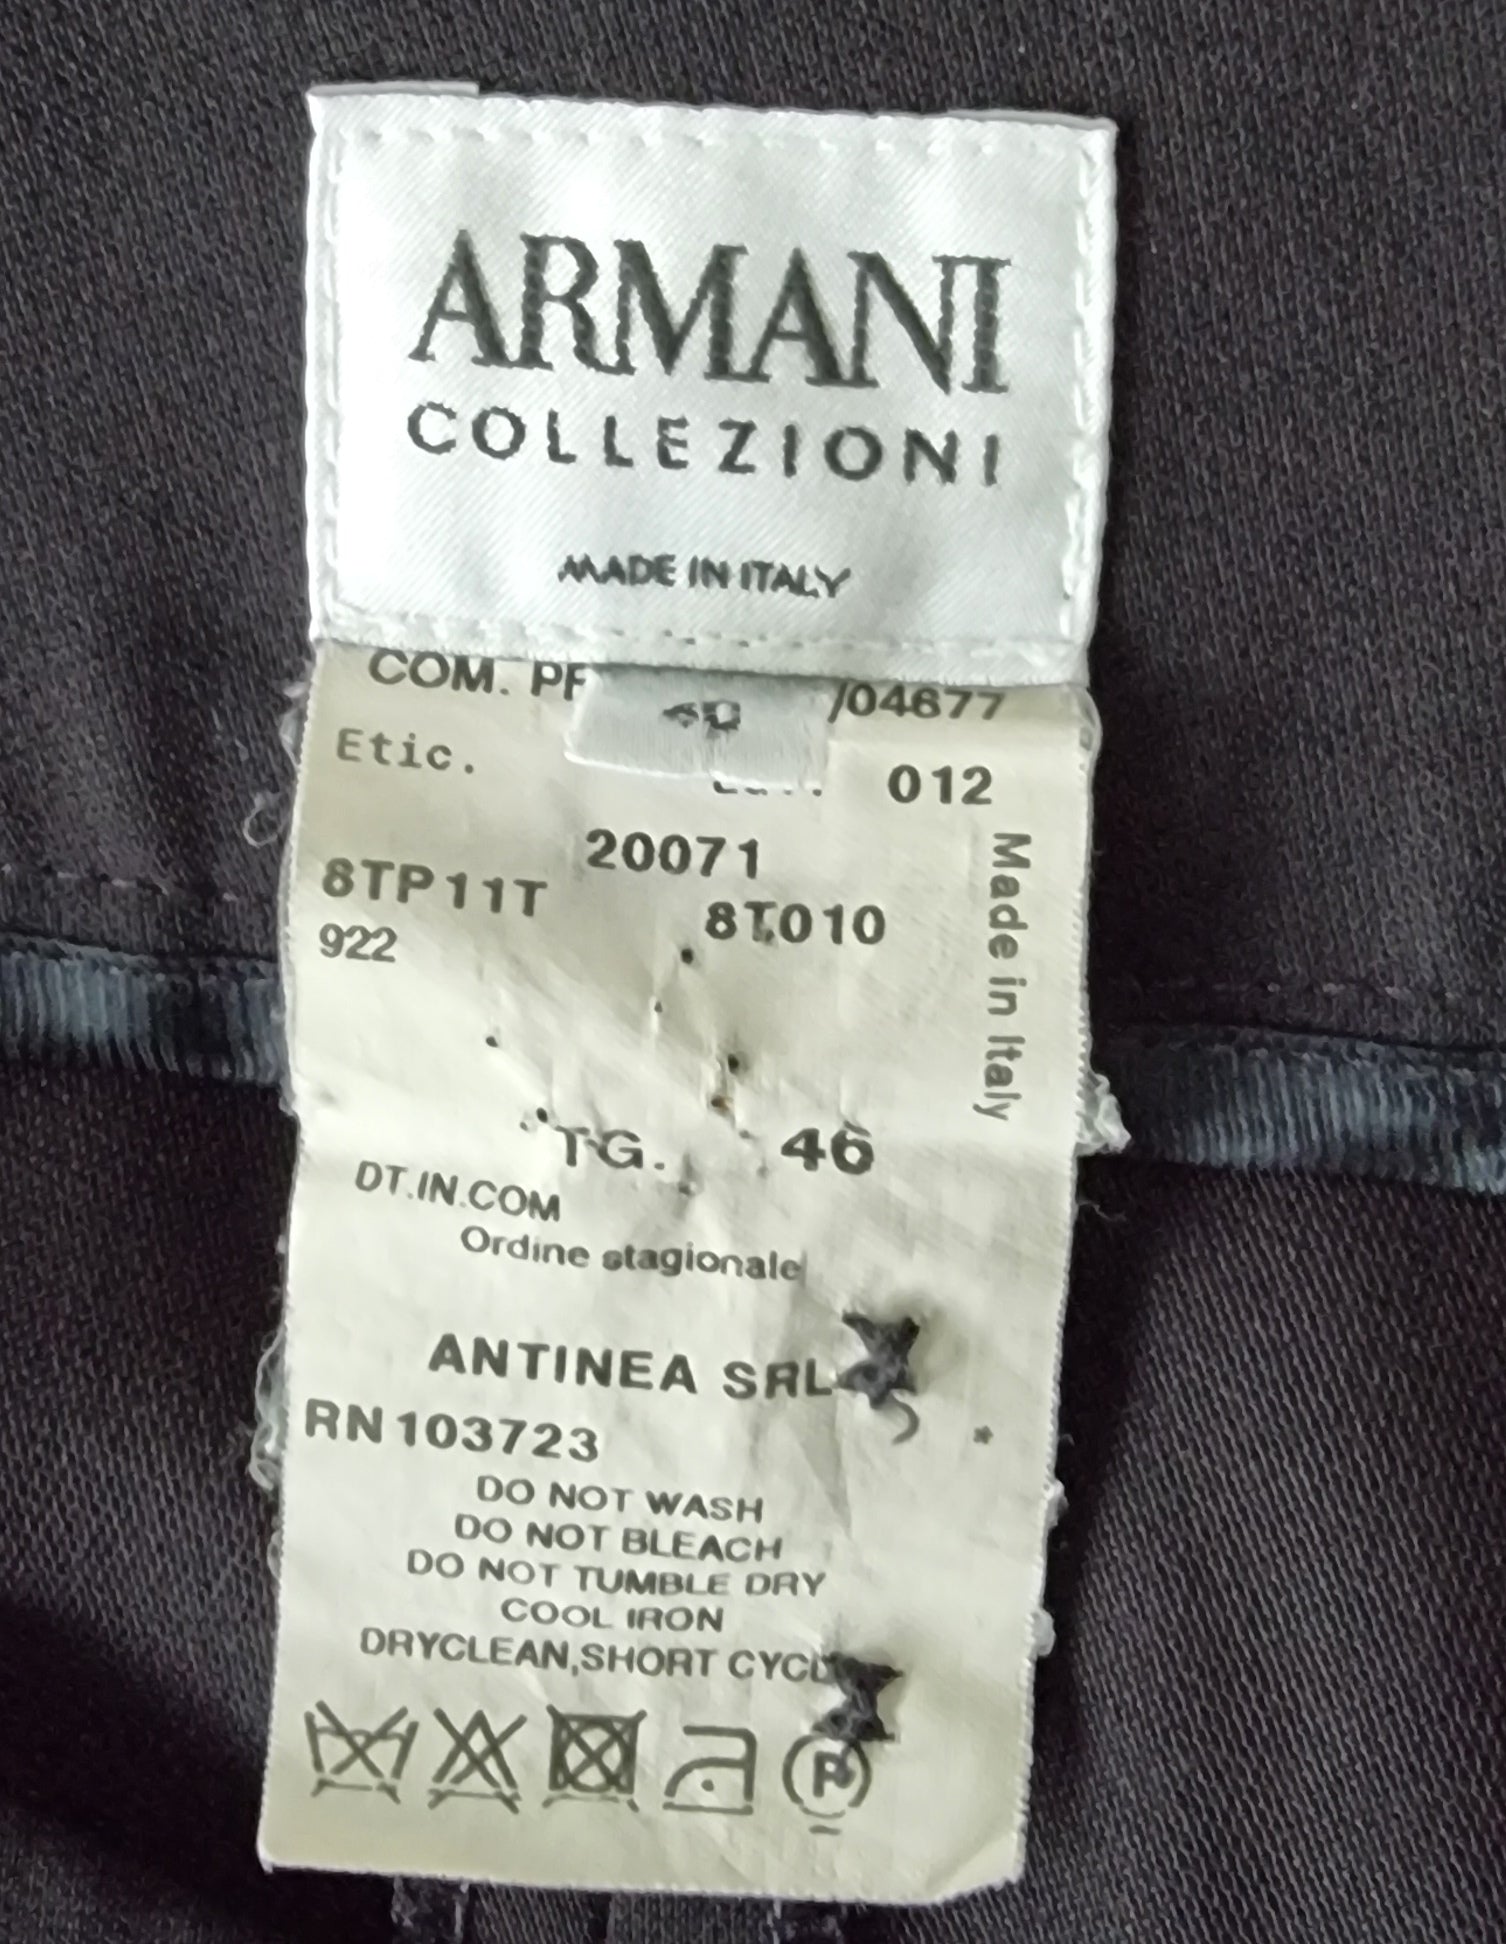 Armani Collezioni Women’s Vintage Balck Wide Leg Trousers UK 14 US 10 EU 42 IT 46 Timeless Fashions